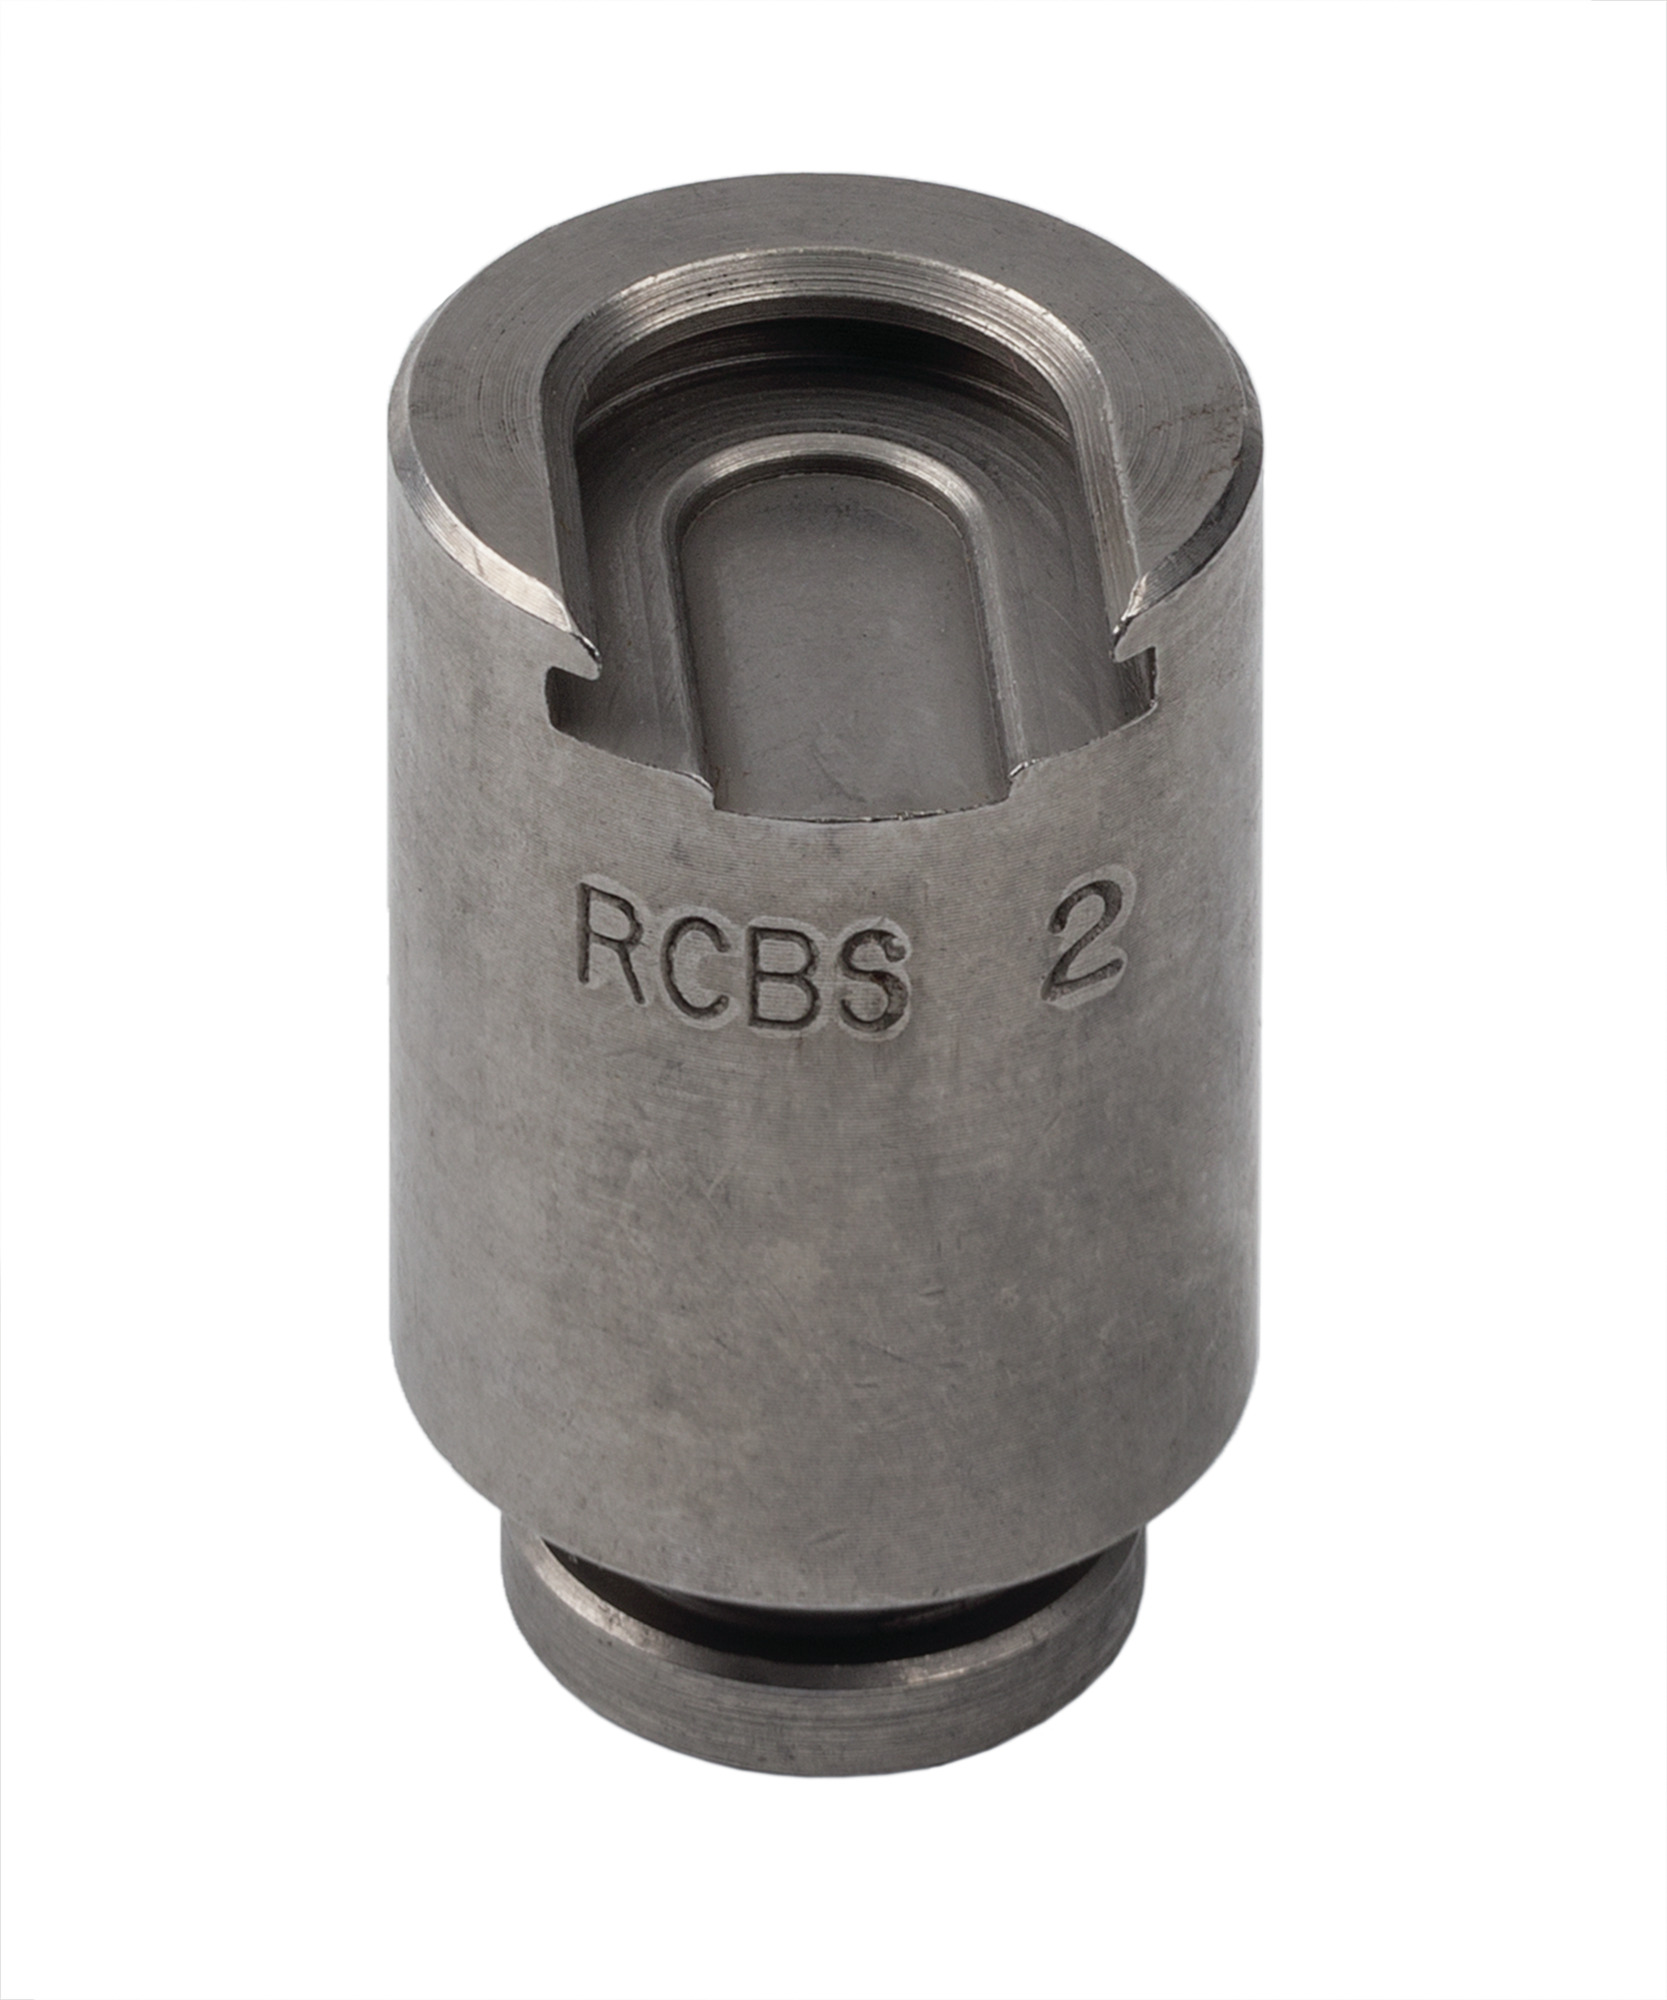 RCBS #18 Shell Holder # 08968 NOS Reloading Equipment 